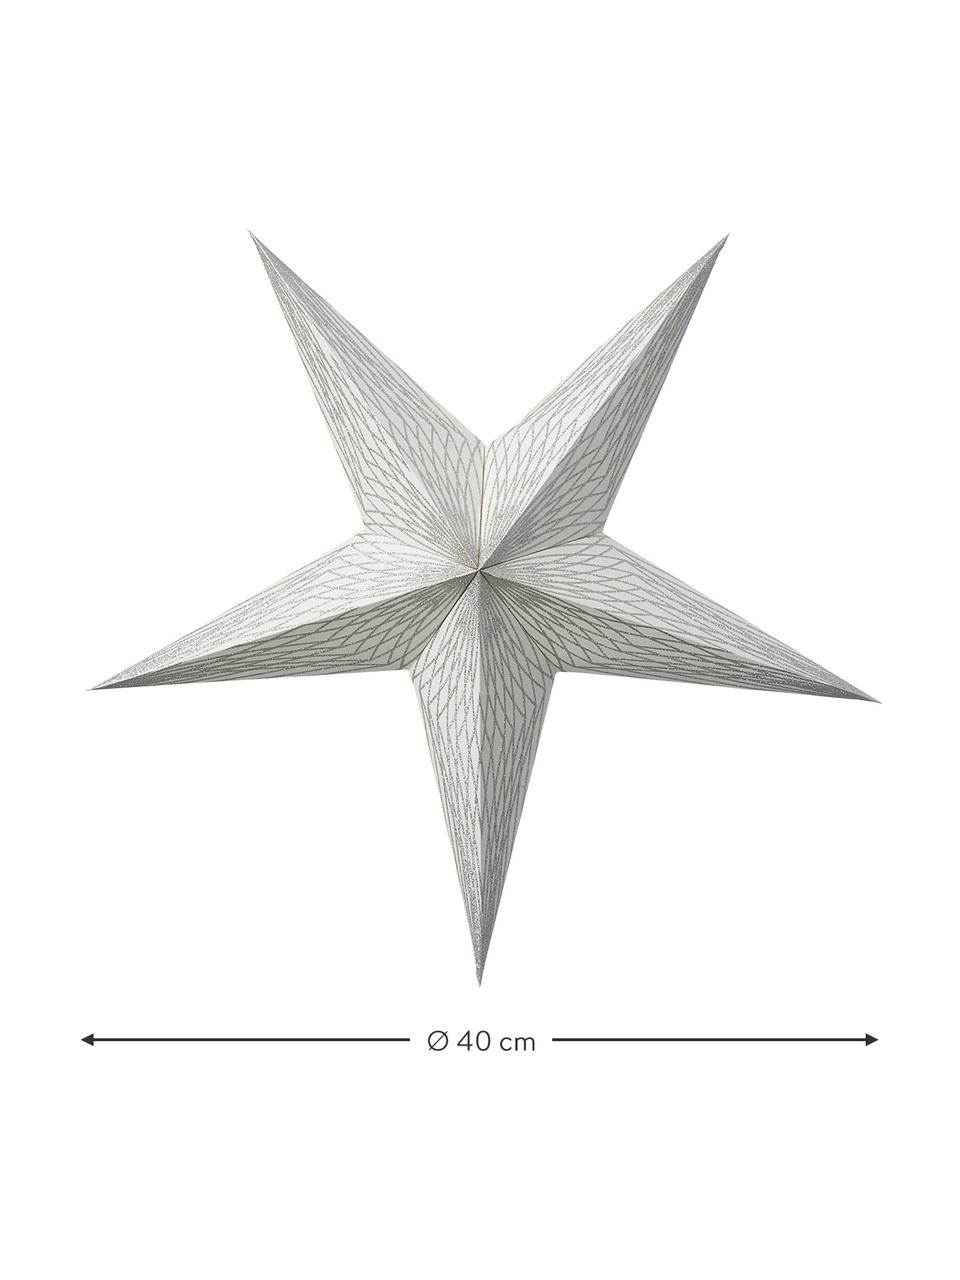 Papier-Stern Icilisse in Silberfarben, Papier, Silberfarben, B 40 x H 40 cm